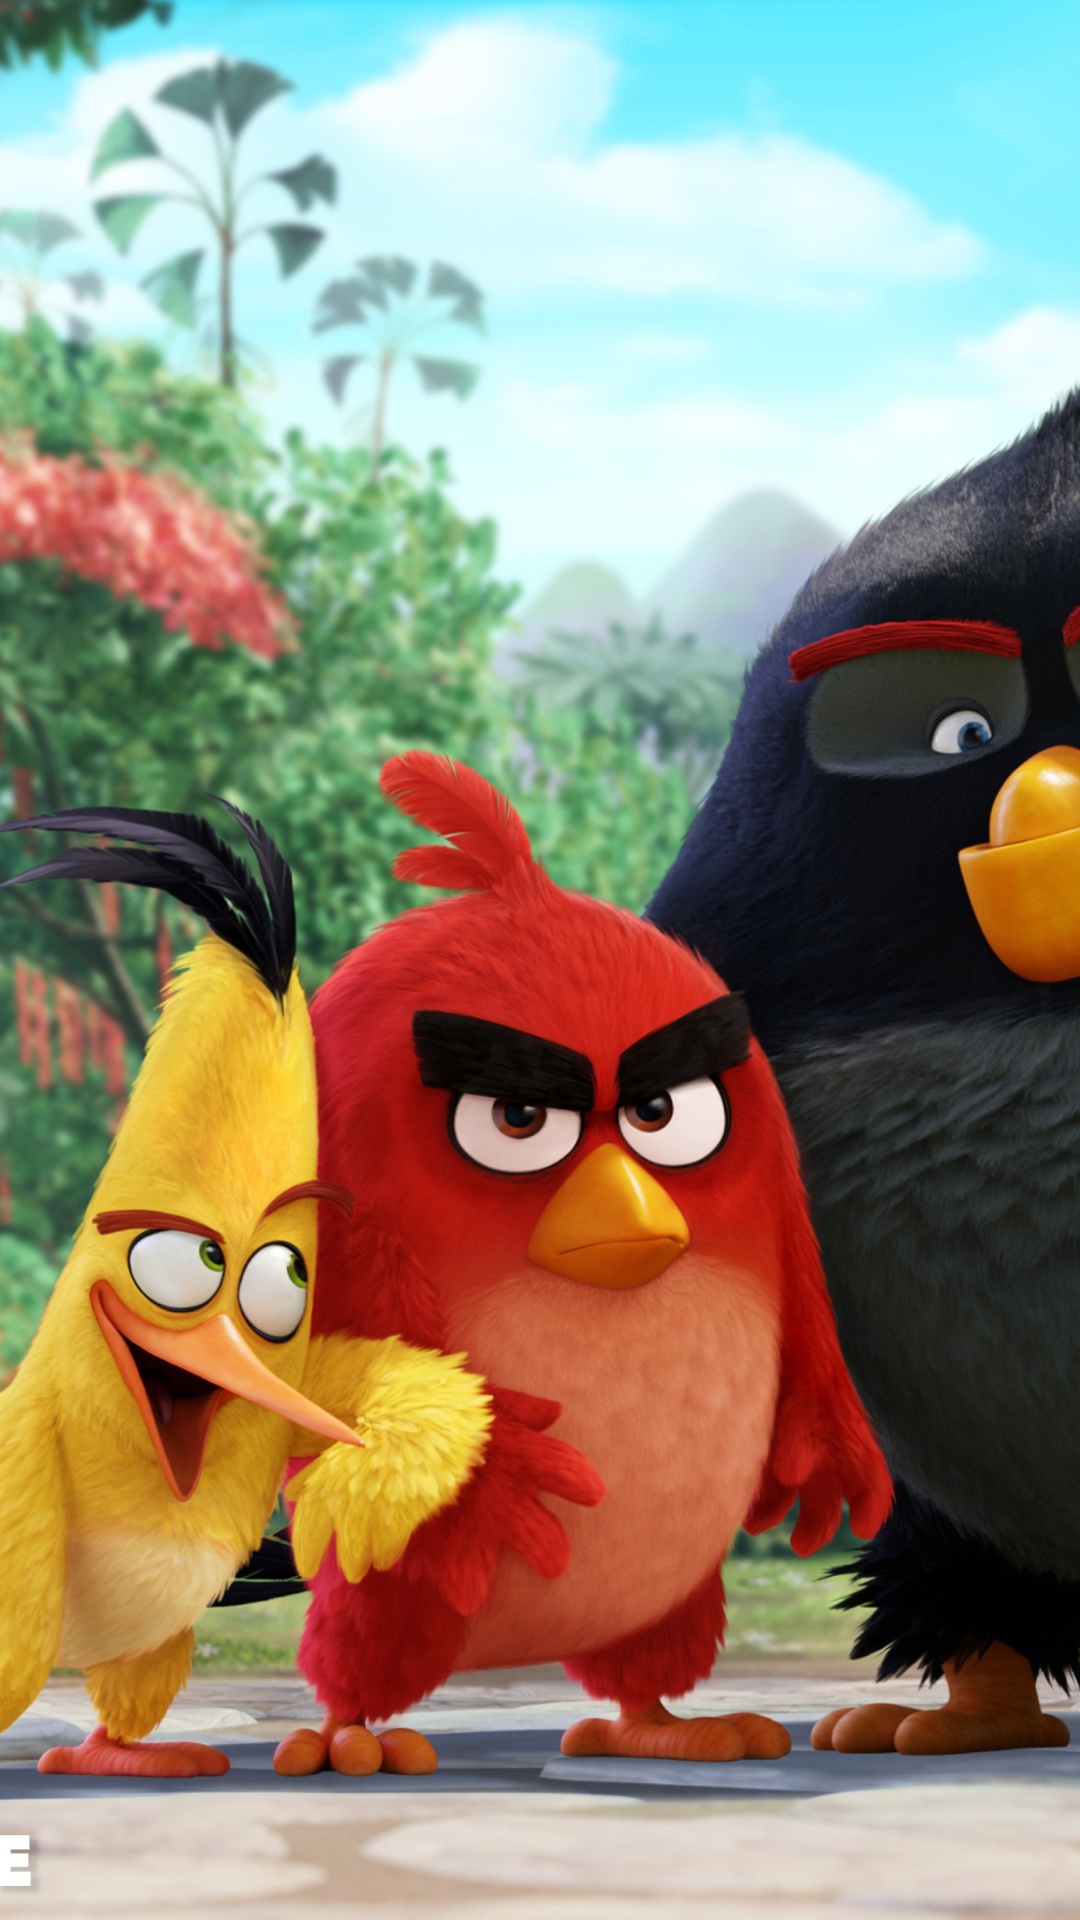 Fondo de pantalla Angry Birds the Movie 2015 Movie by Rovio 1080x1920